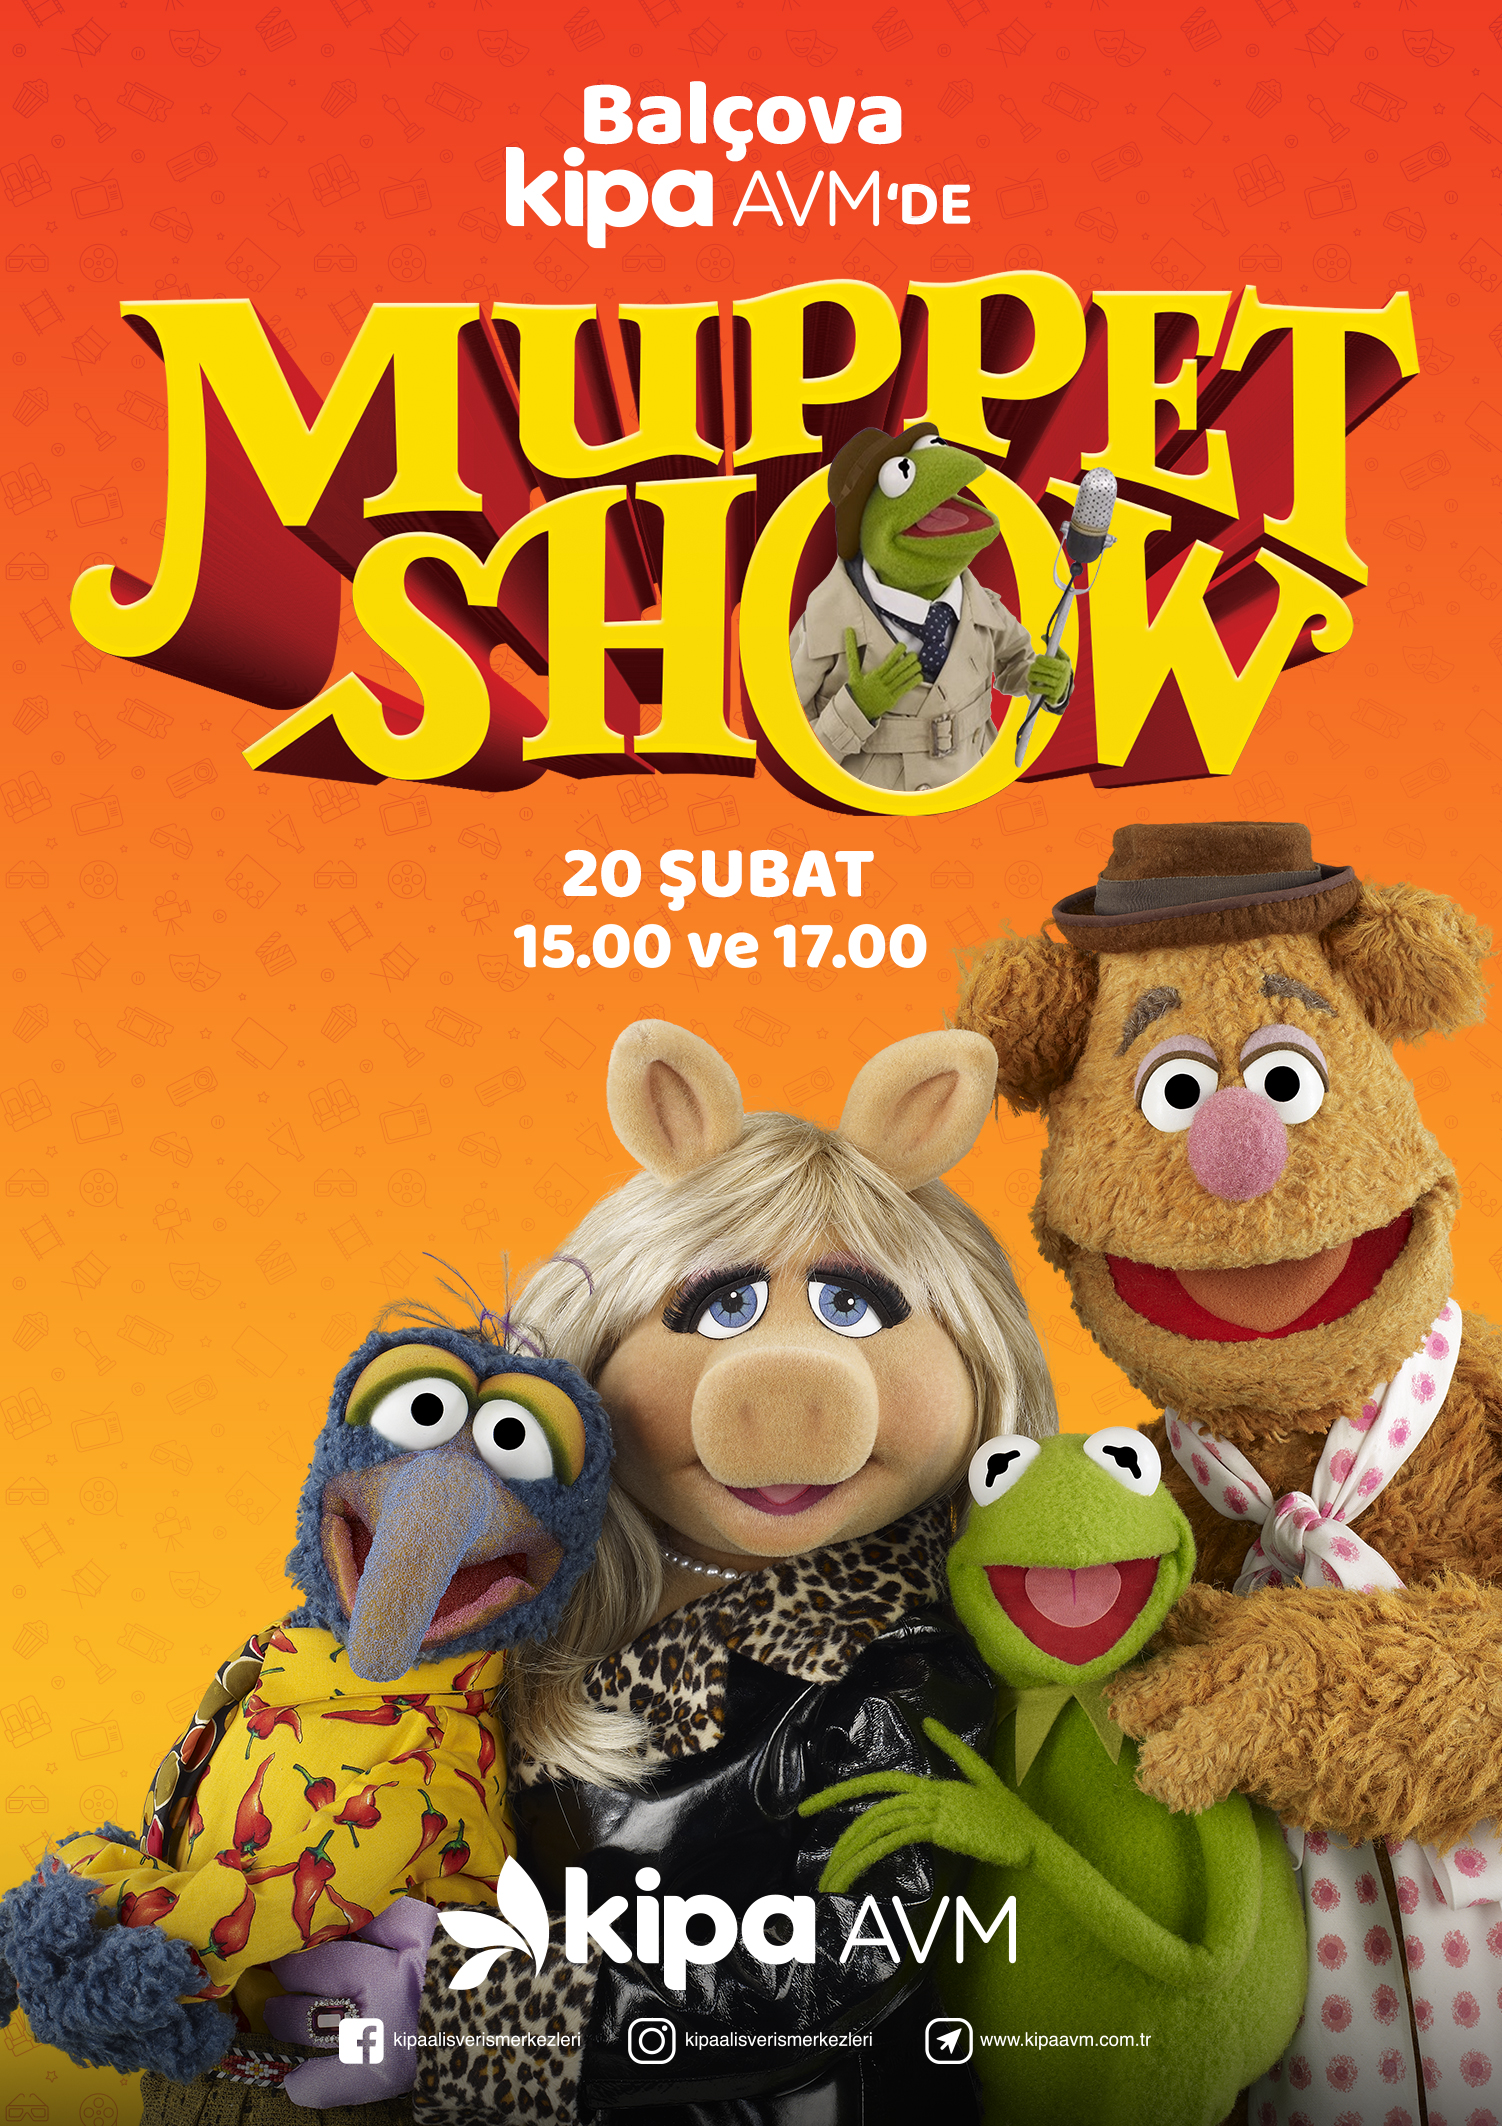 Balçova Kipa AVM'de Muppet Show!
